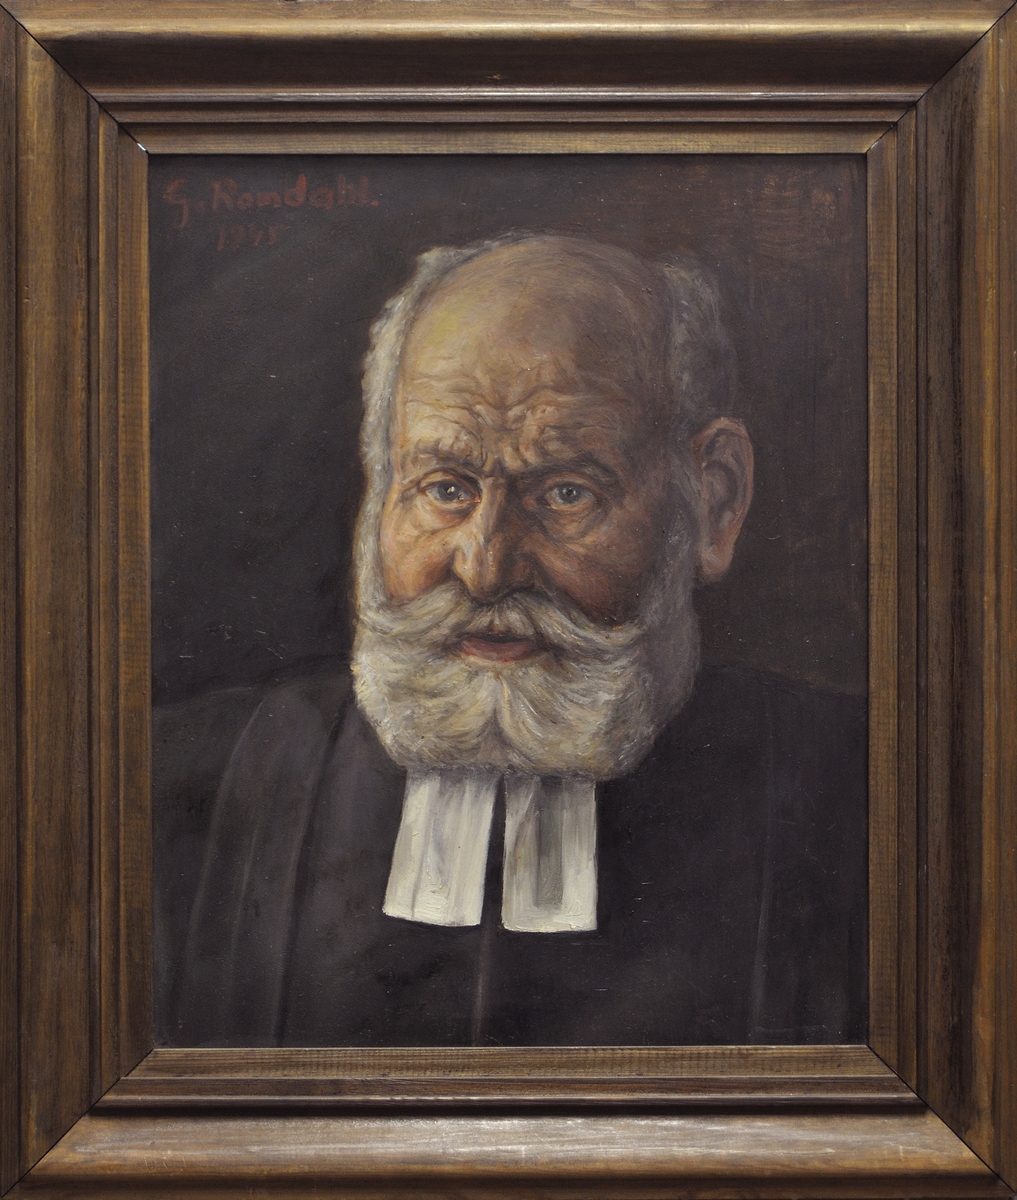 Oljemålning, porträtt av kyrkoherde emeritus G. Robert E. Bolin, f. i Martebo, Gotland, 3/2 1865. Kyrkoherde i Vamlingbo, Gotland 1910-1933. 
Signerad G. Romdal, 1945.